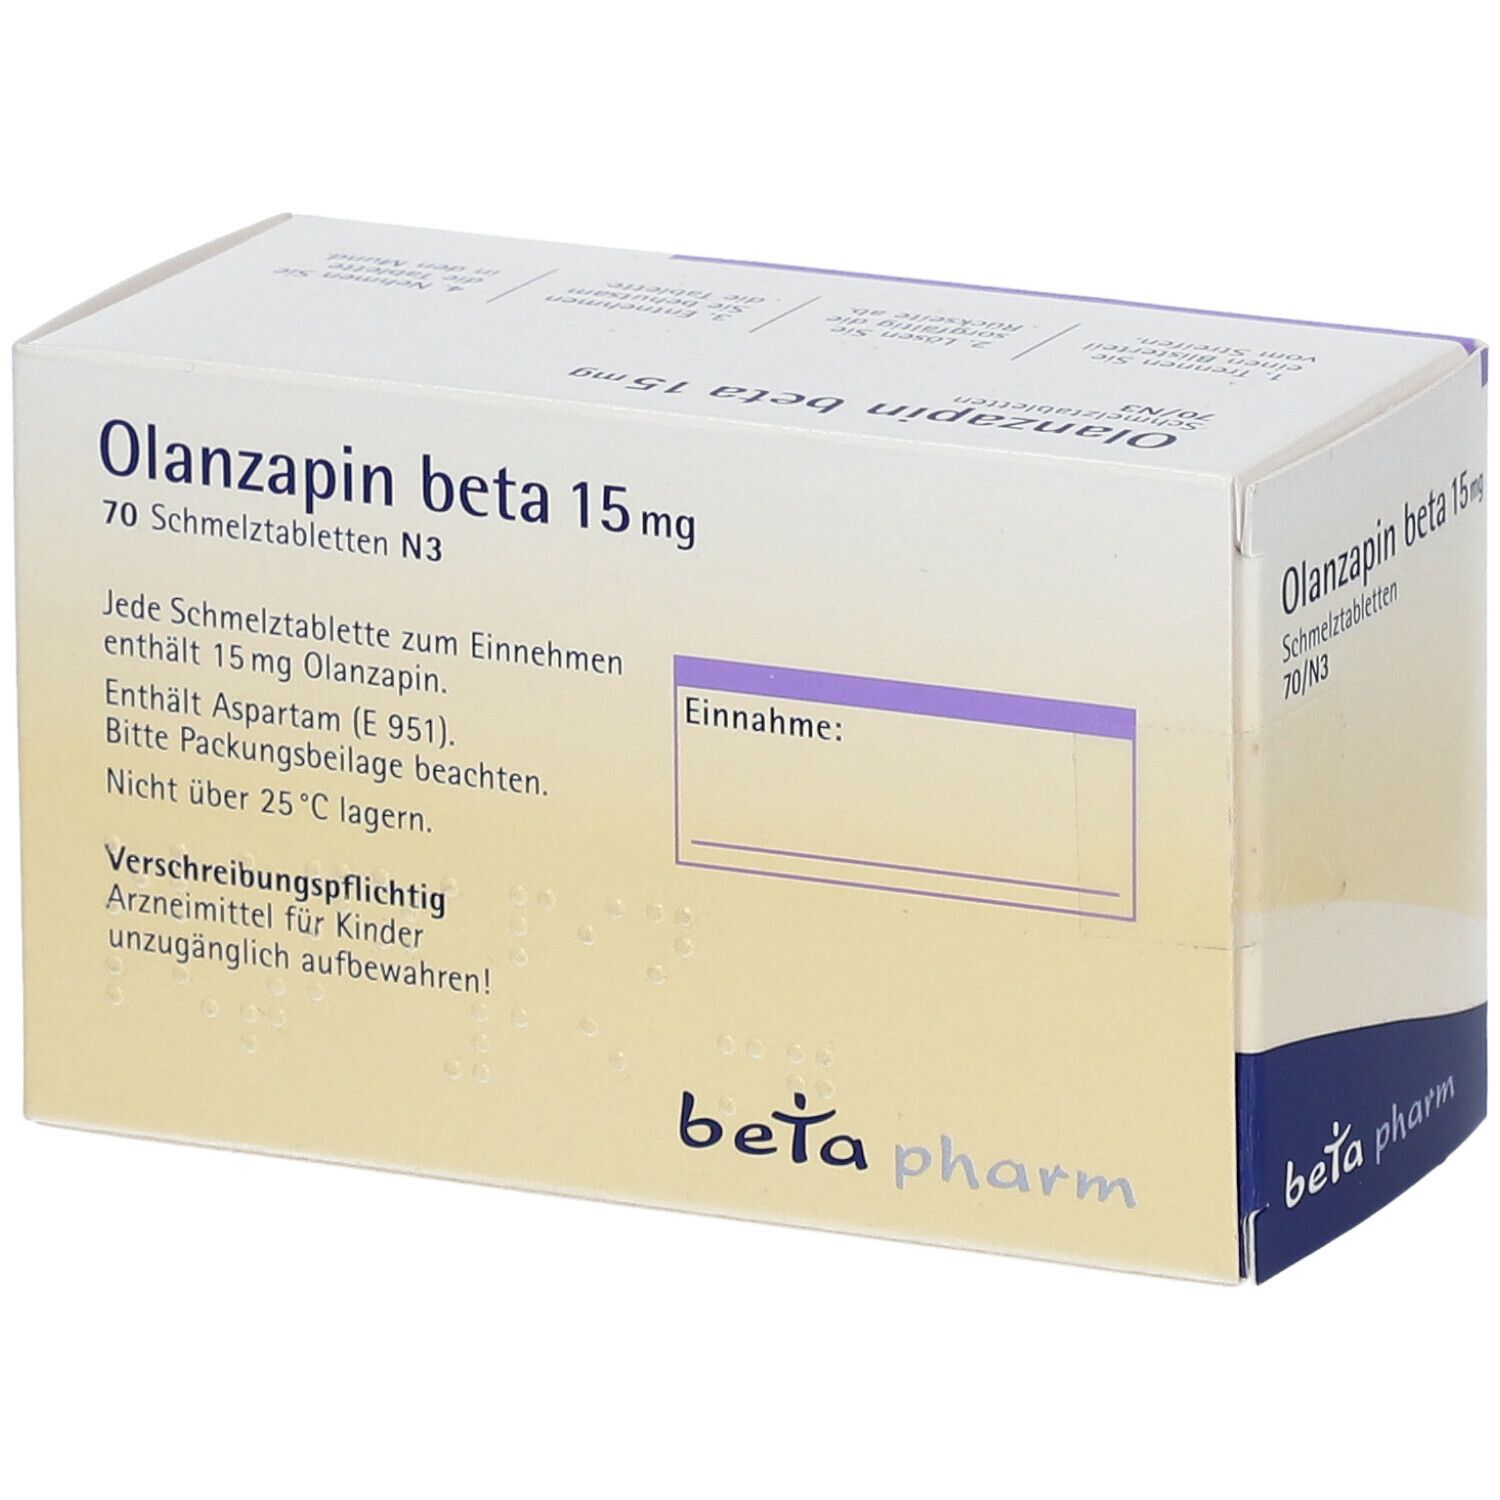 Olanzapin beta 15 mg Schmelztabletten